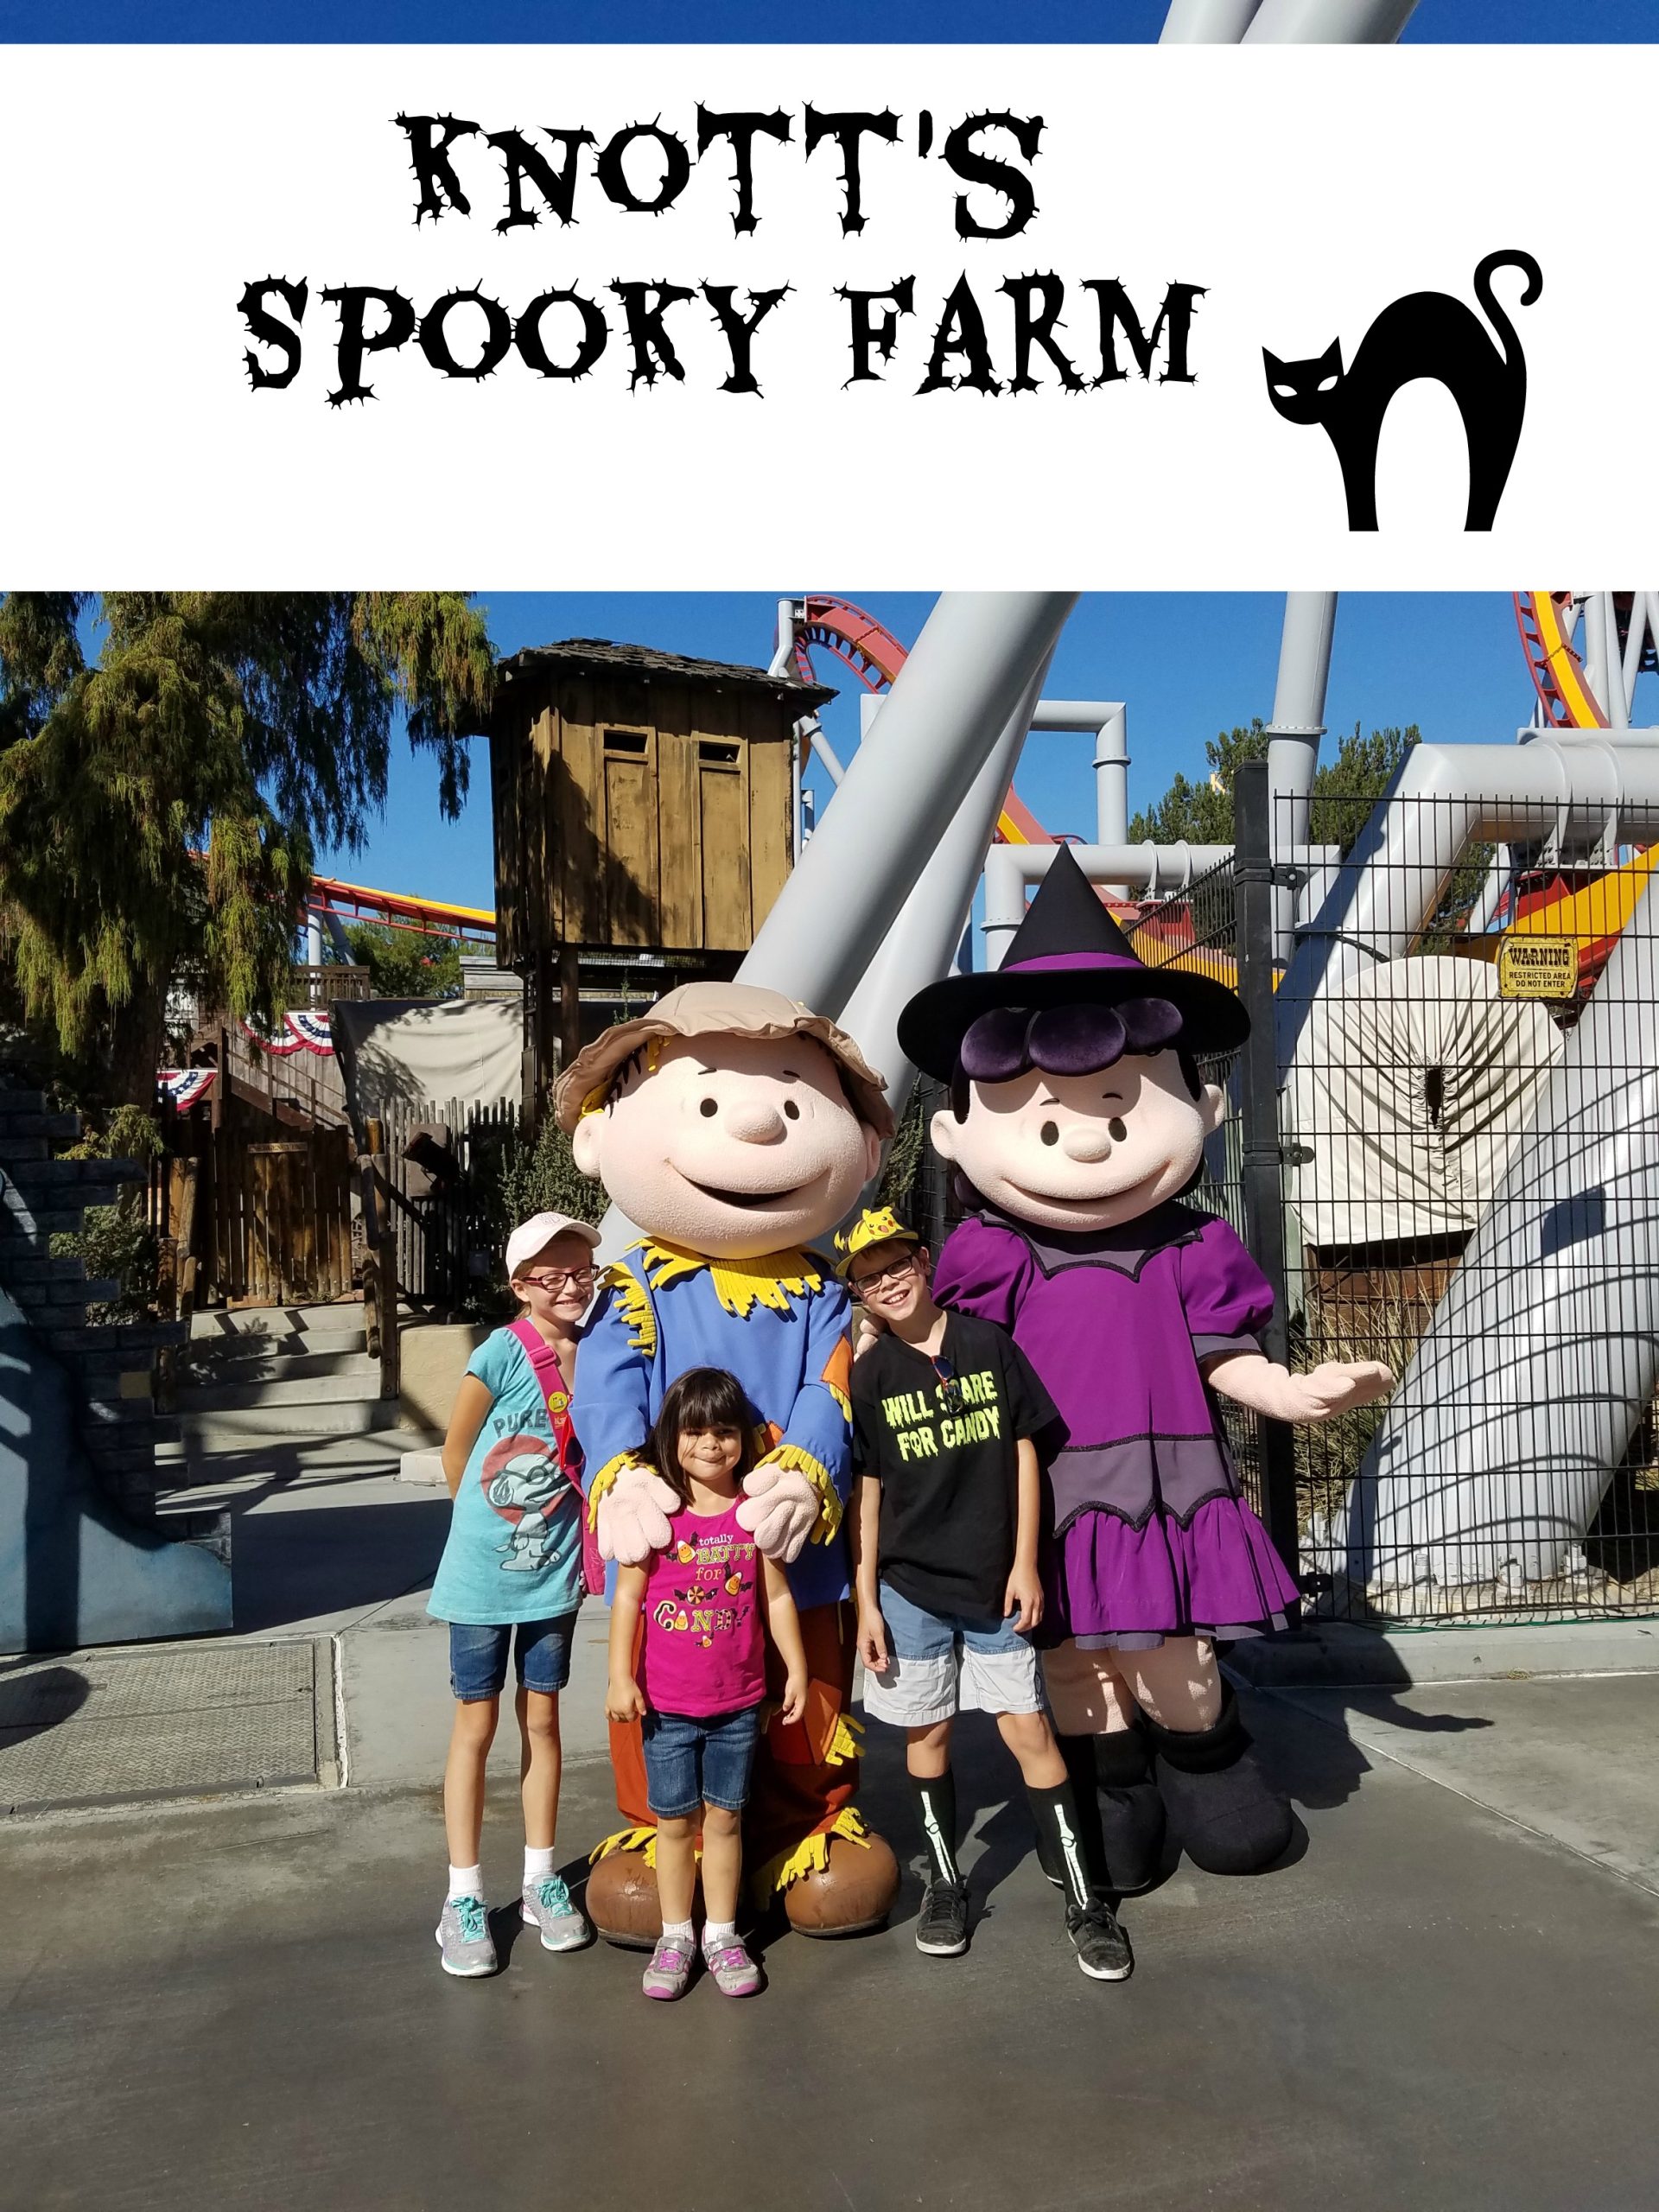 Knott's Spooky Farm is daytime Halloween fun for kids!